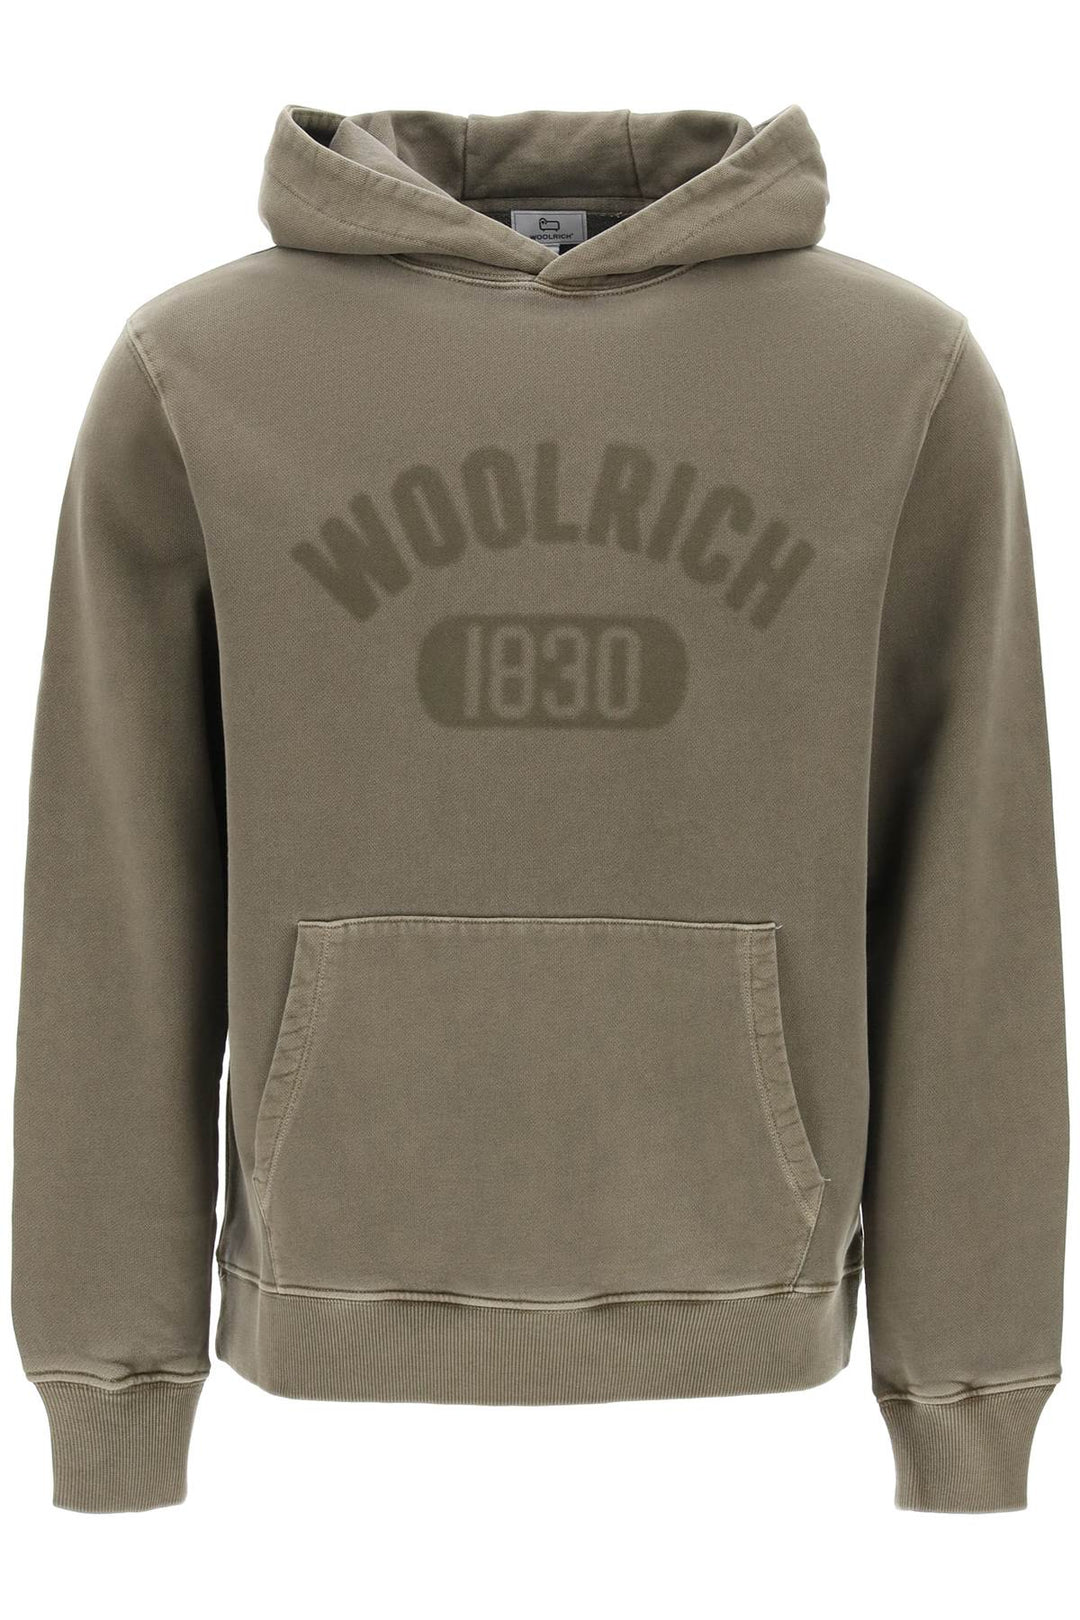 vintage-look hoodie with logo print and-0